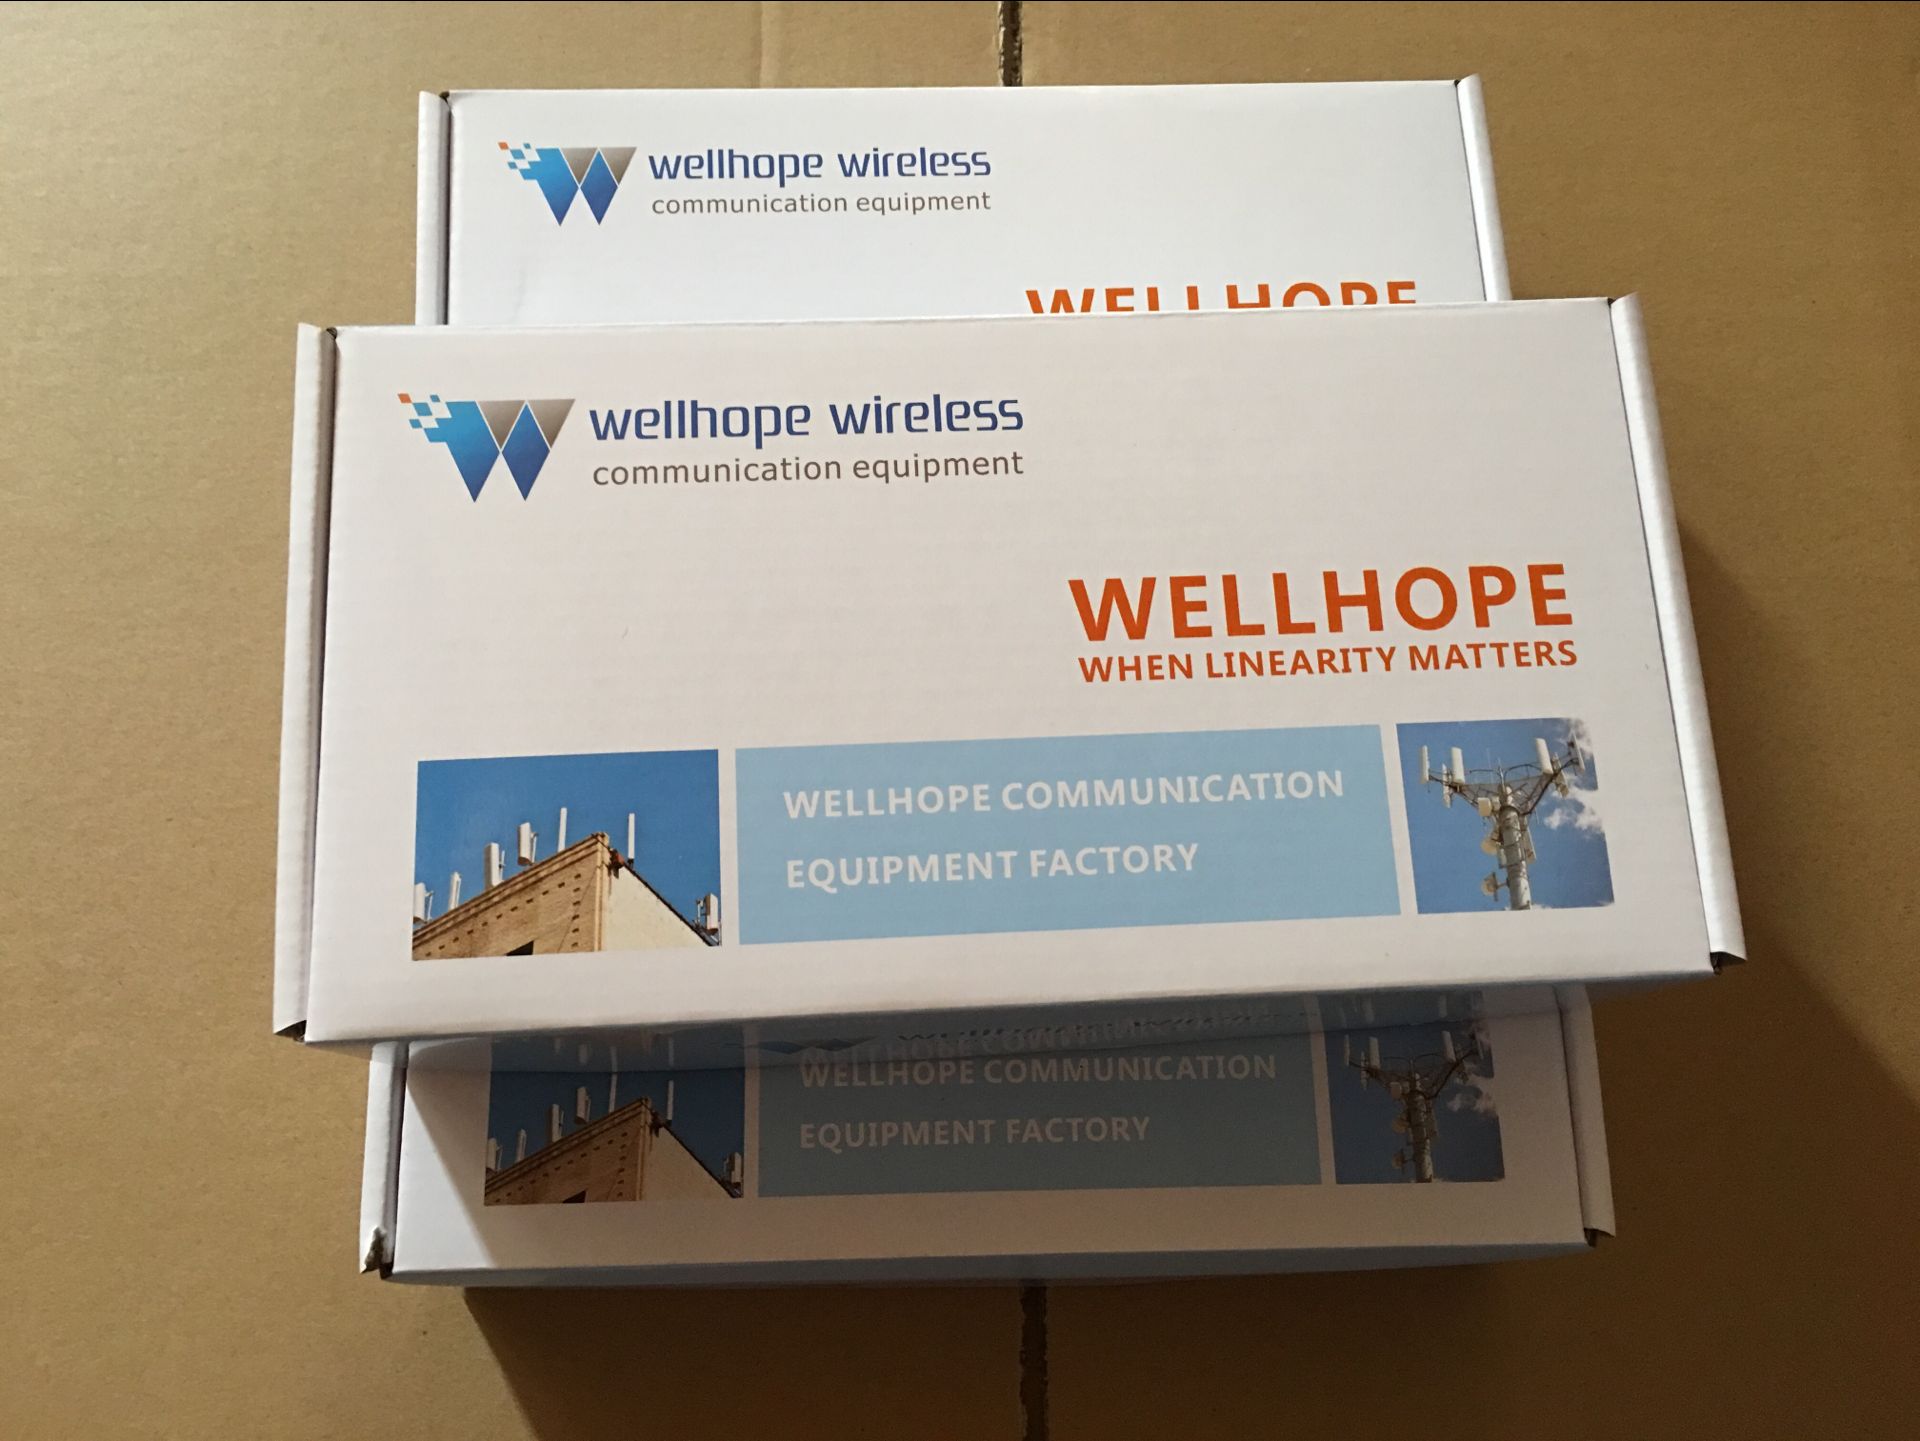  2017/7/26 wellhope wireless 2000 pz 2.4GHz antenna WH-2.4GHz-02